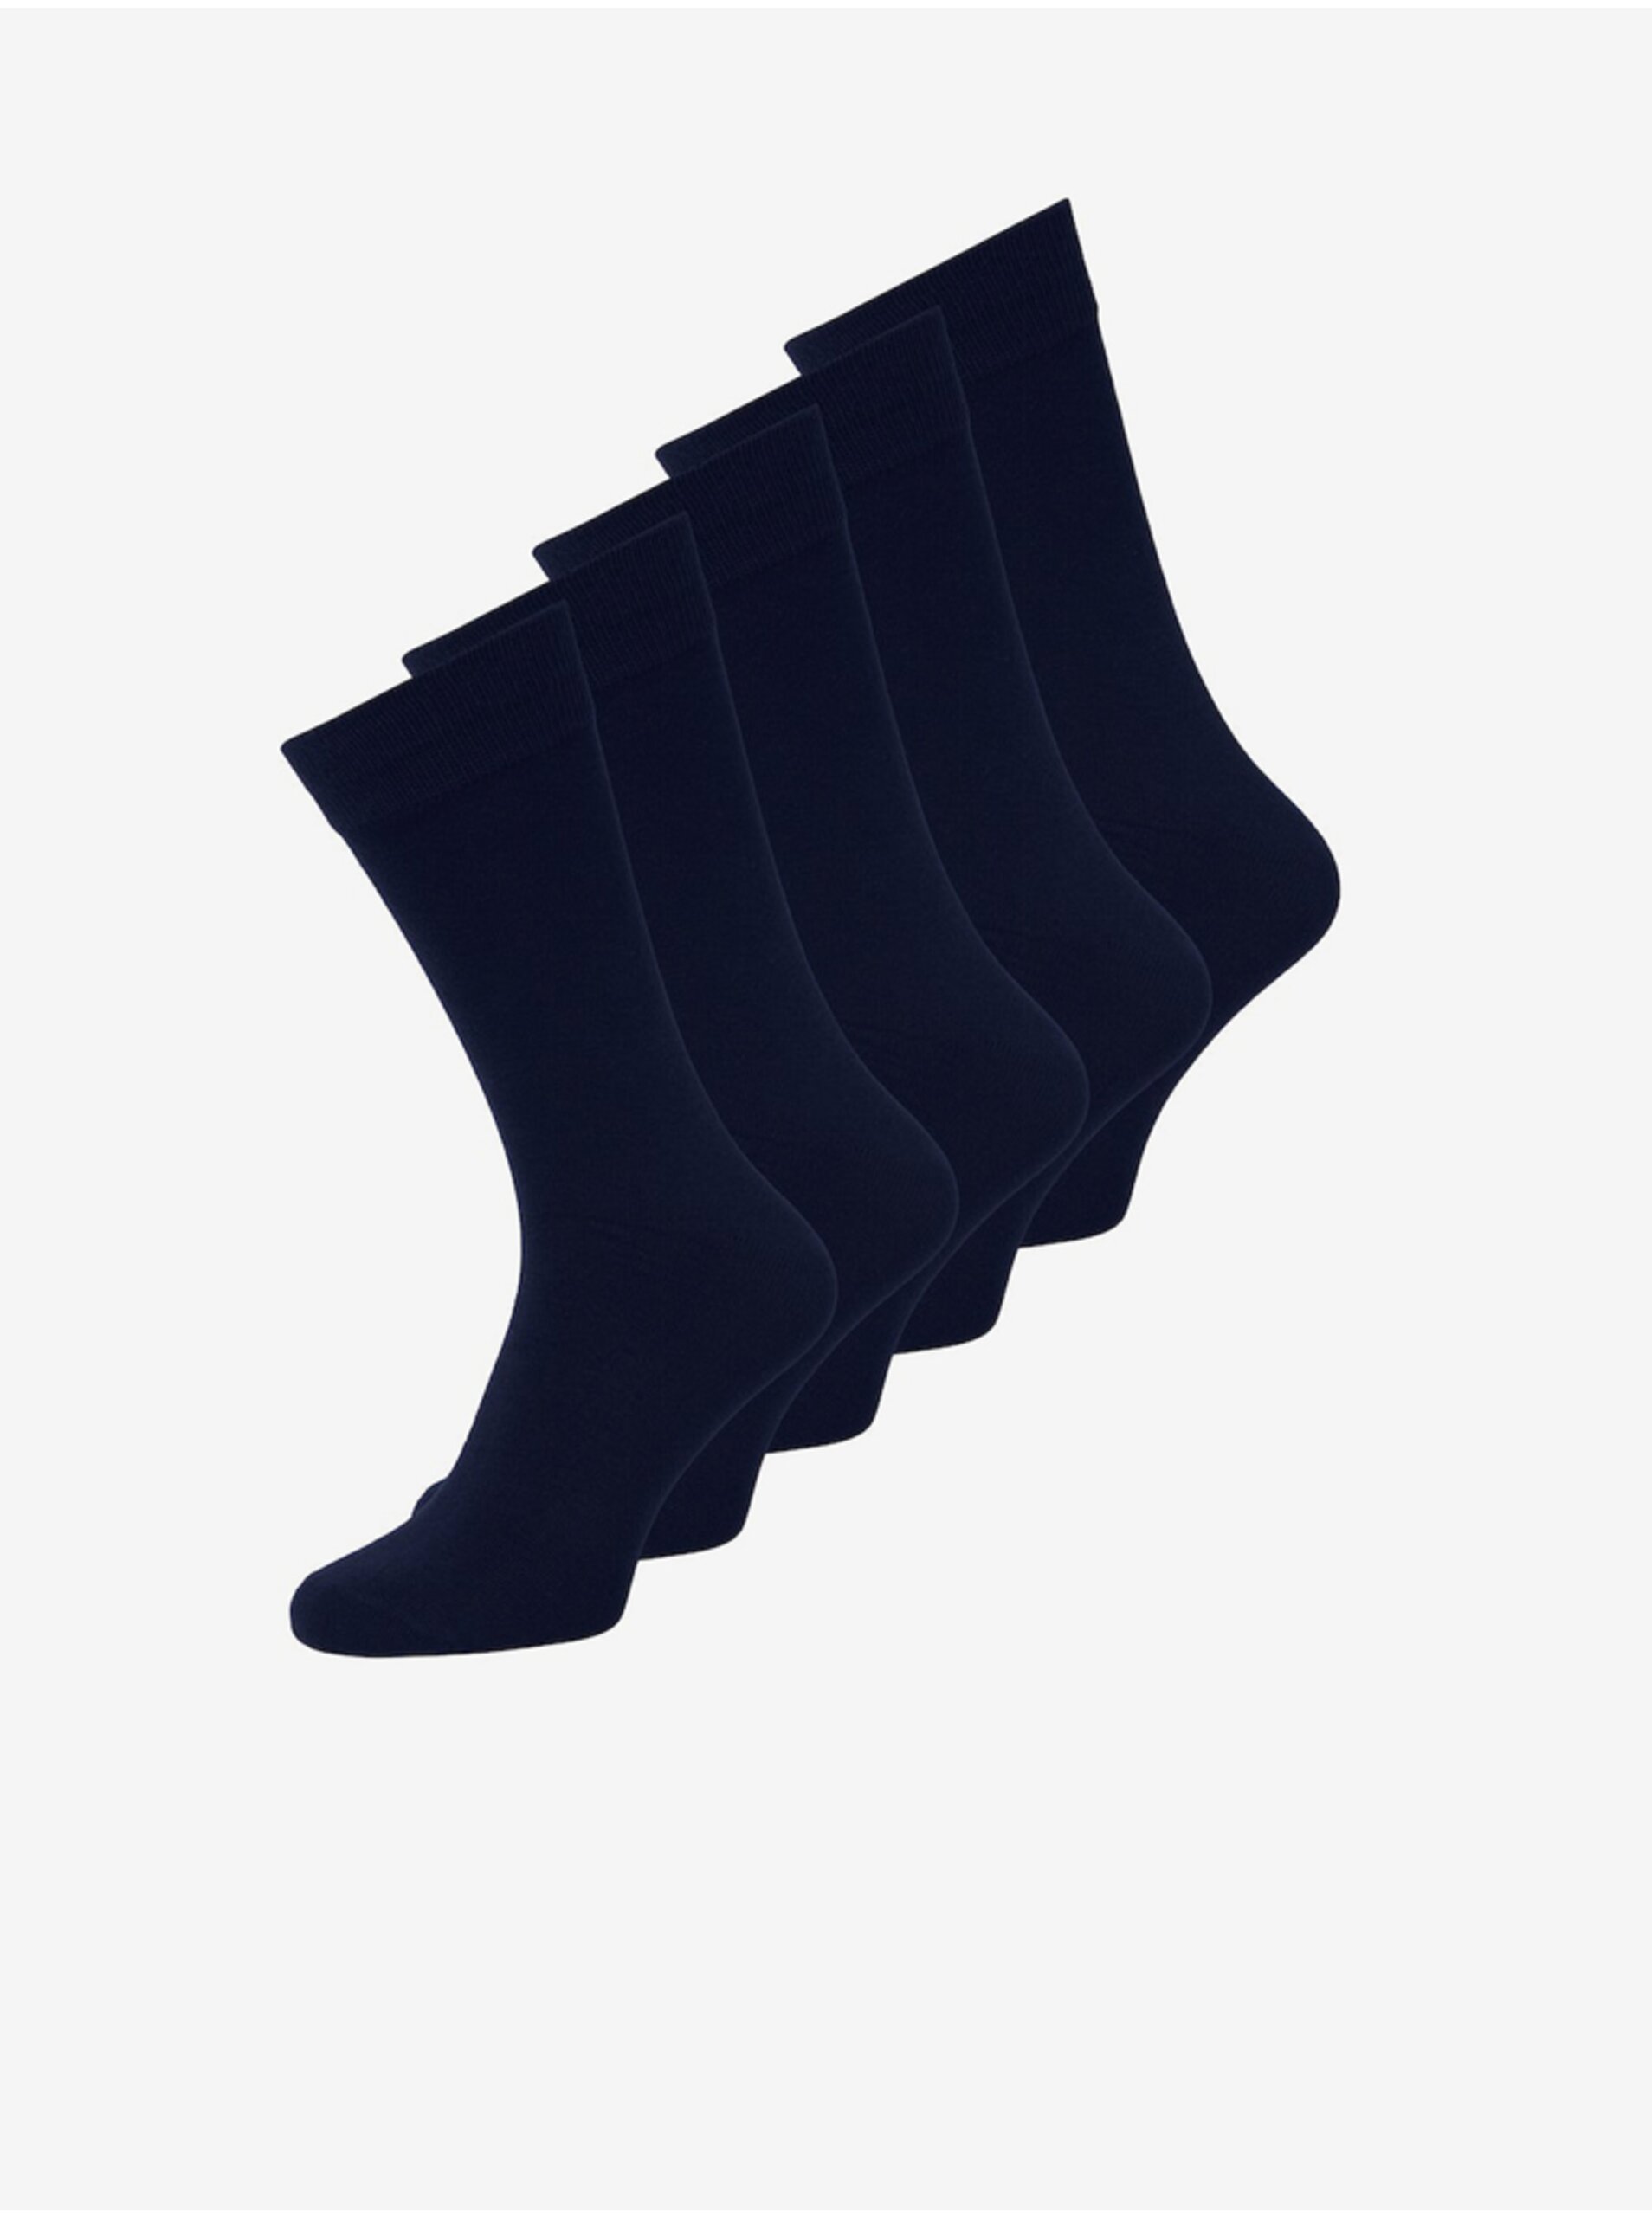 Lacno Súprava piatich párov pánskych ponožiek v tmavo modrej farbe Jack & Jones Jens